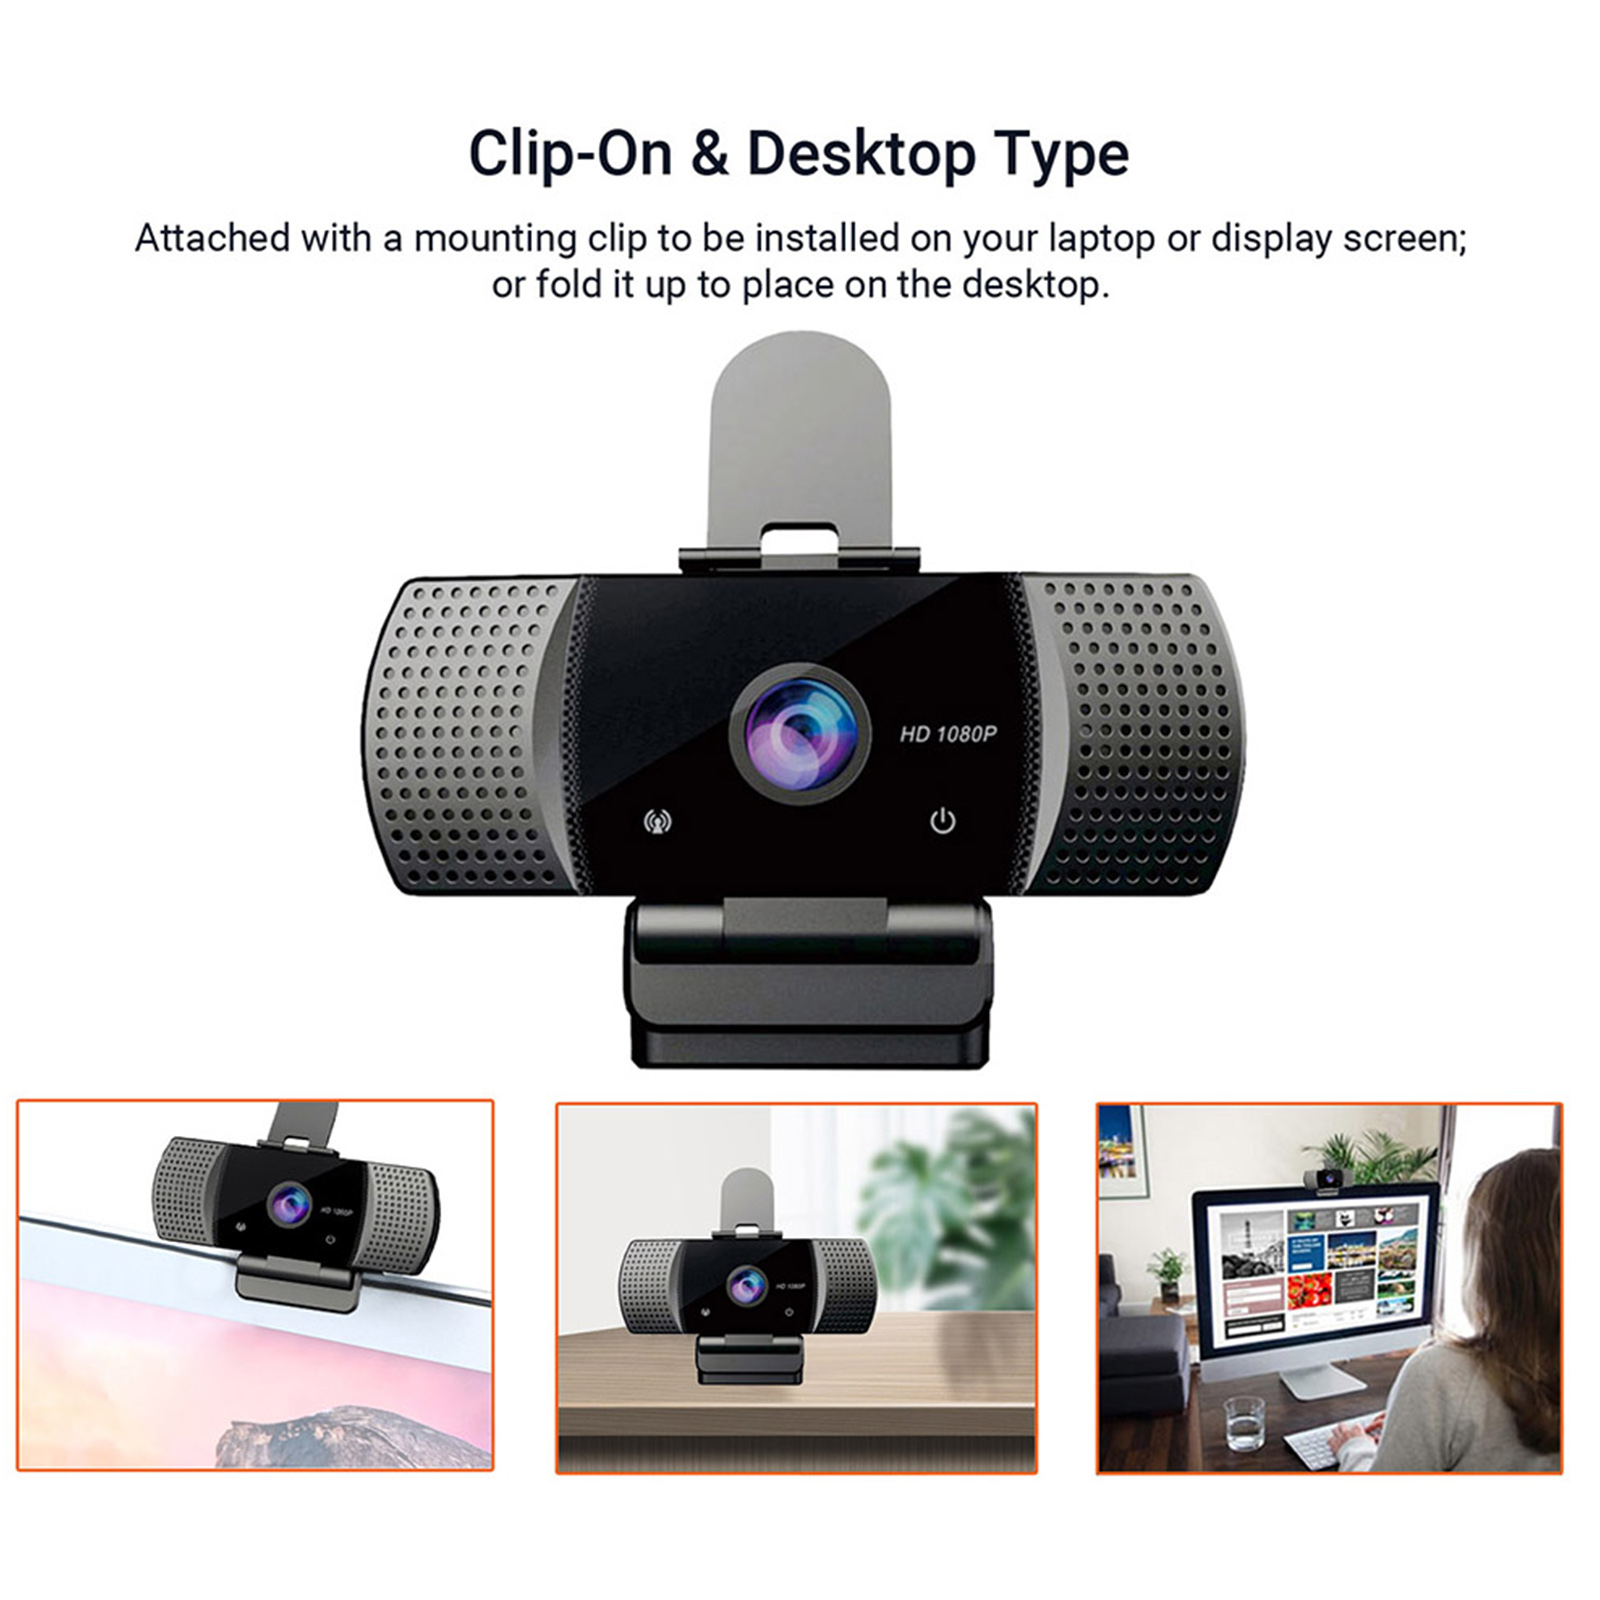 Webcam USB Góc Rộng Full HD 1080p USB2.0 Không Có Ổ Đĩa Với Mic Web Cam Cho Hội Nghị Trực Tuyến Phát Trực Tiếp Trên Máy Tính Xách Tay